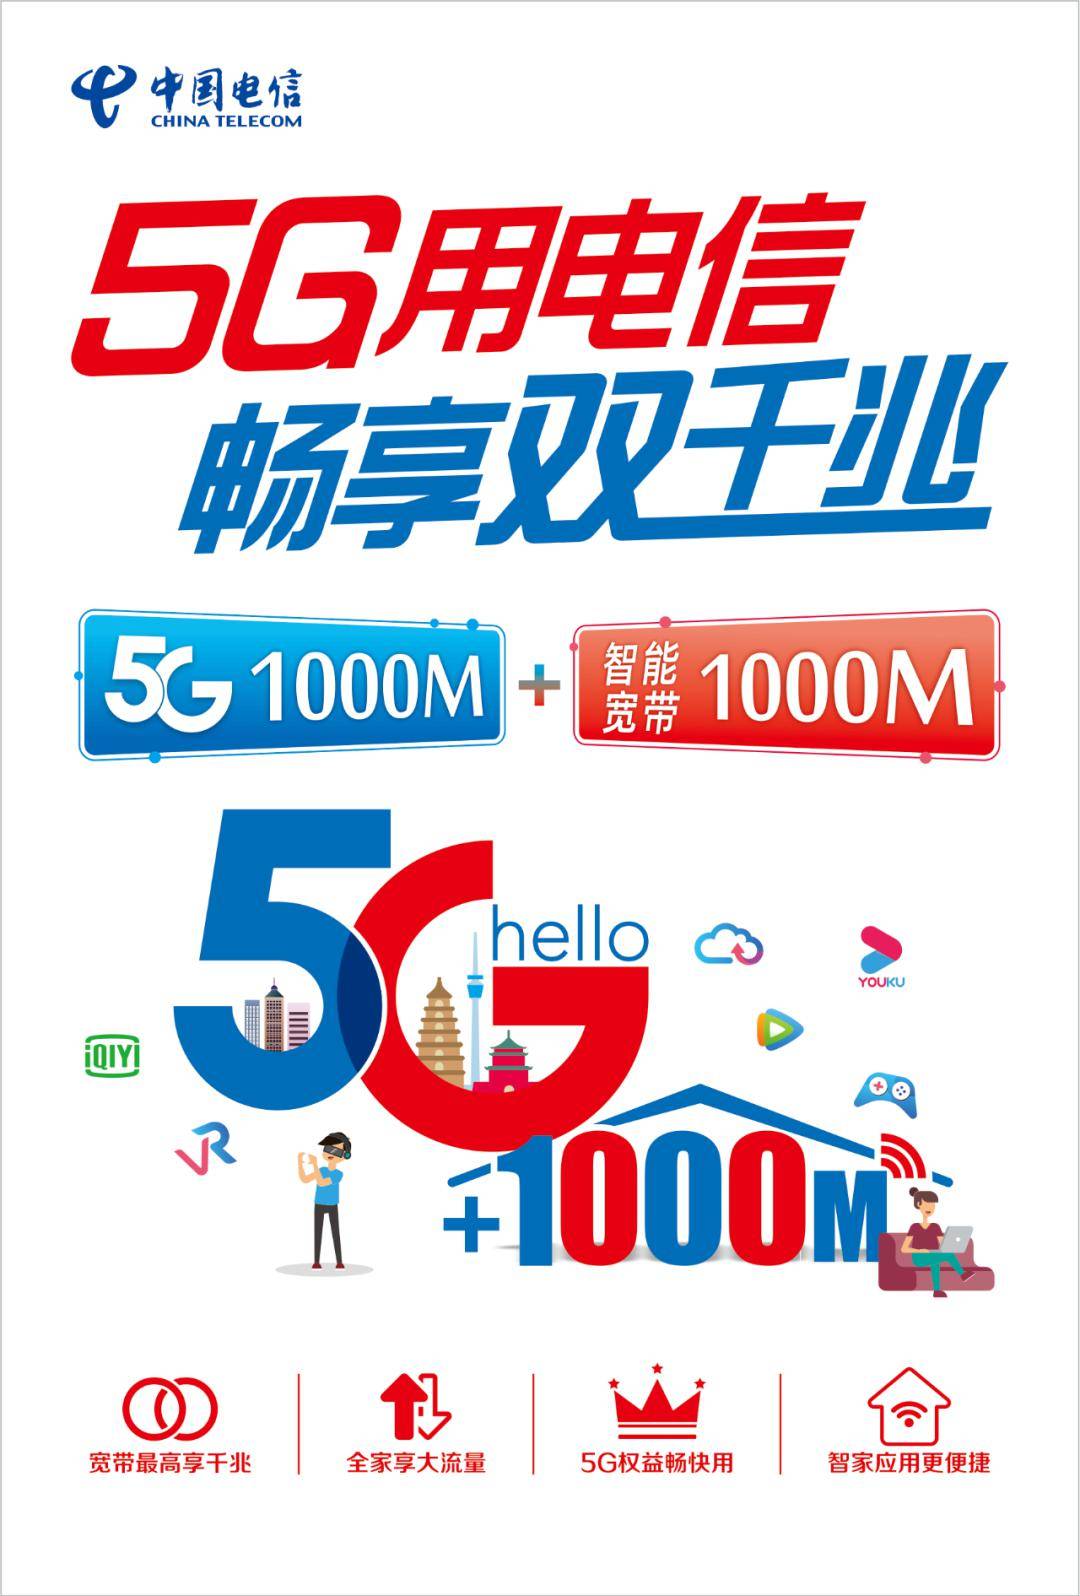 快人一步中国电信神木分公司5g全面开网买5g手机最高享受5000元补贴